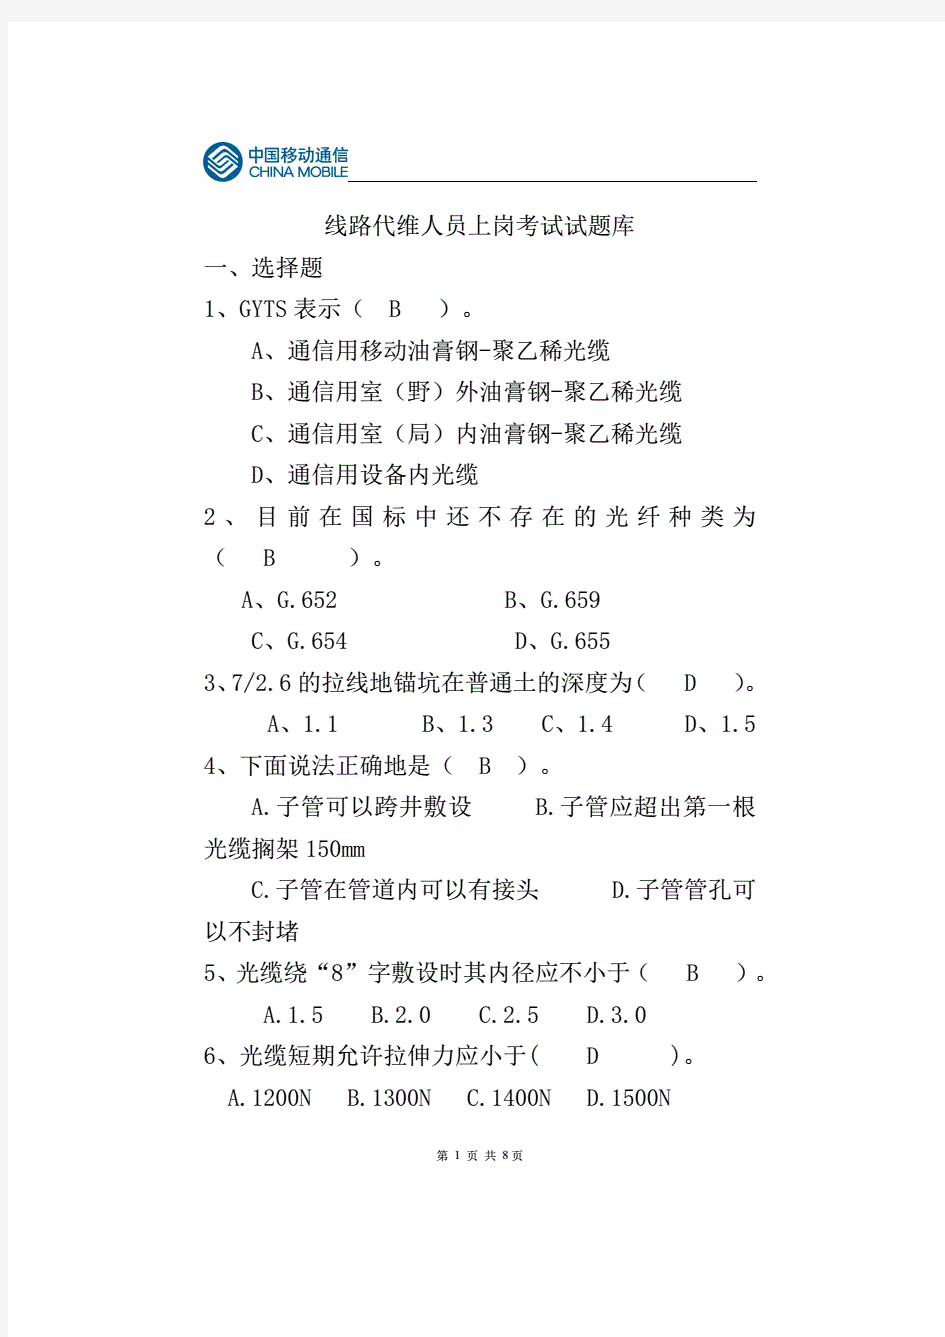 中国移动通信线路代维人员上岗考试试题库及答案.